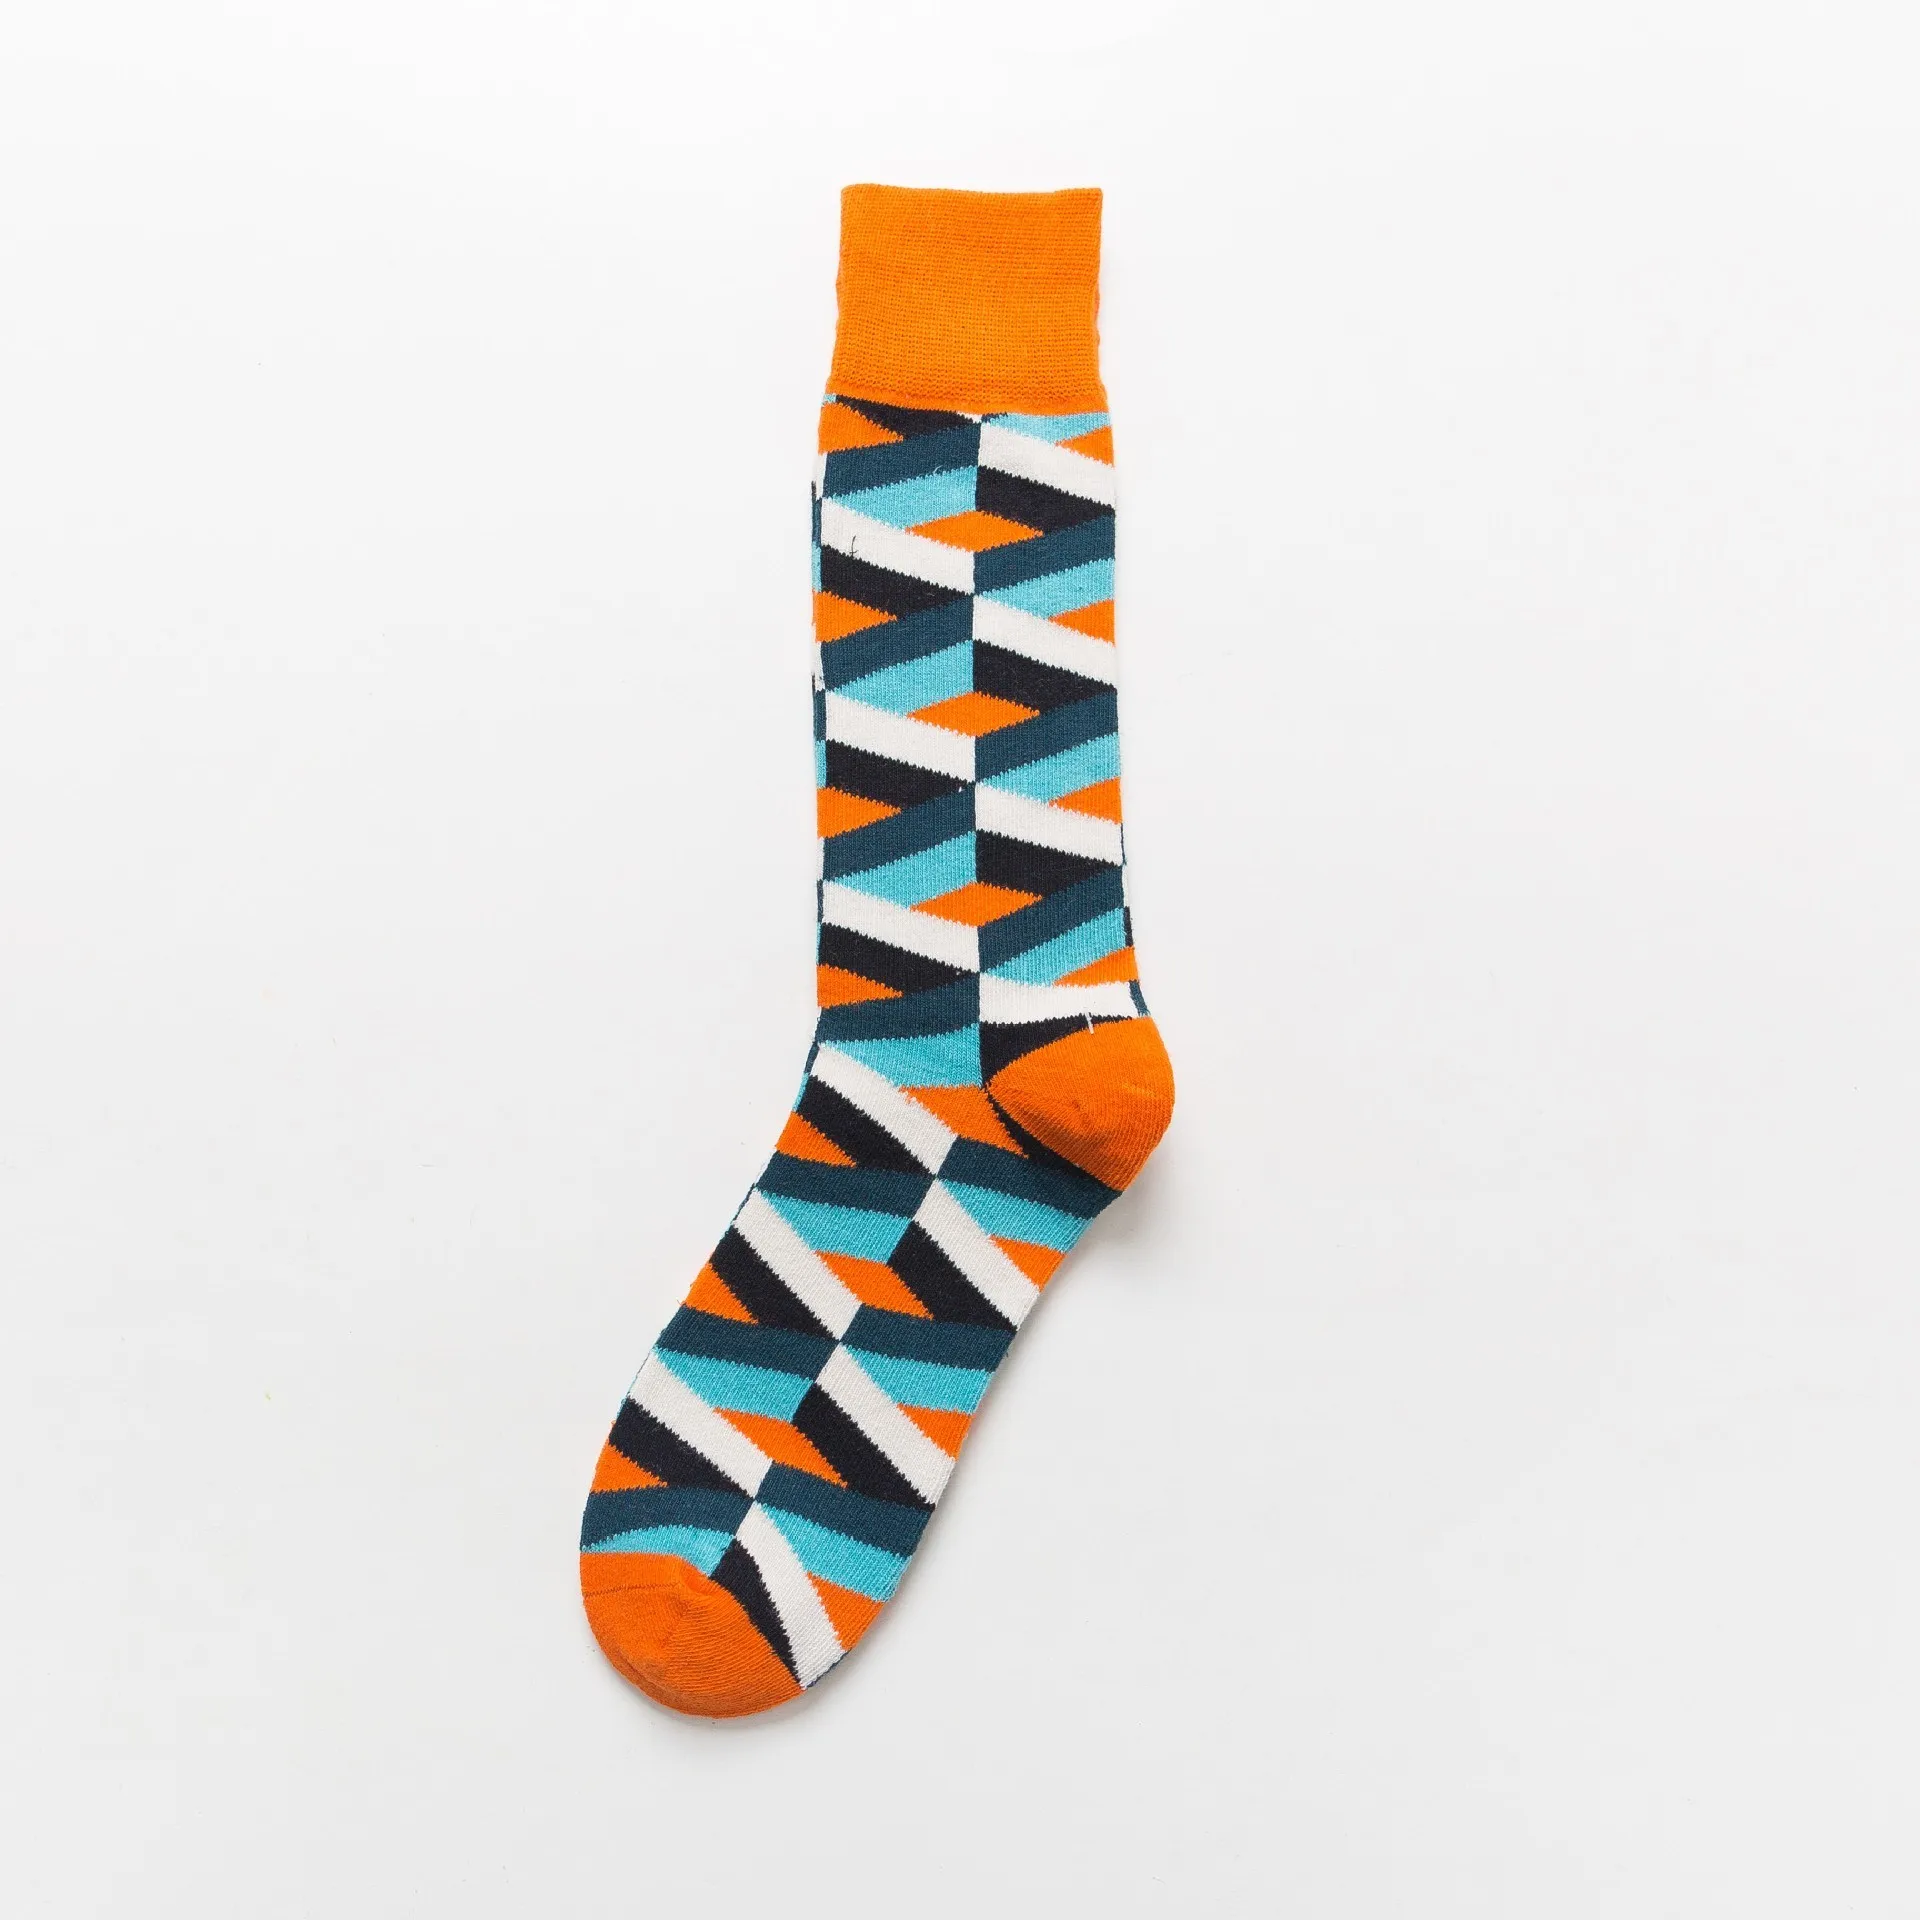 PEONFLY,, повседневные мужские носки, новые носки, модные, дизайнерские, в клетку, с геометрическим рисунком, цветные, счастливые, деловые, мужские хлопковые носки - Цвет: L2